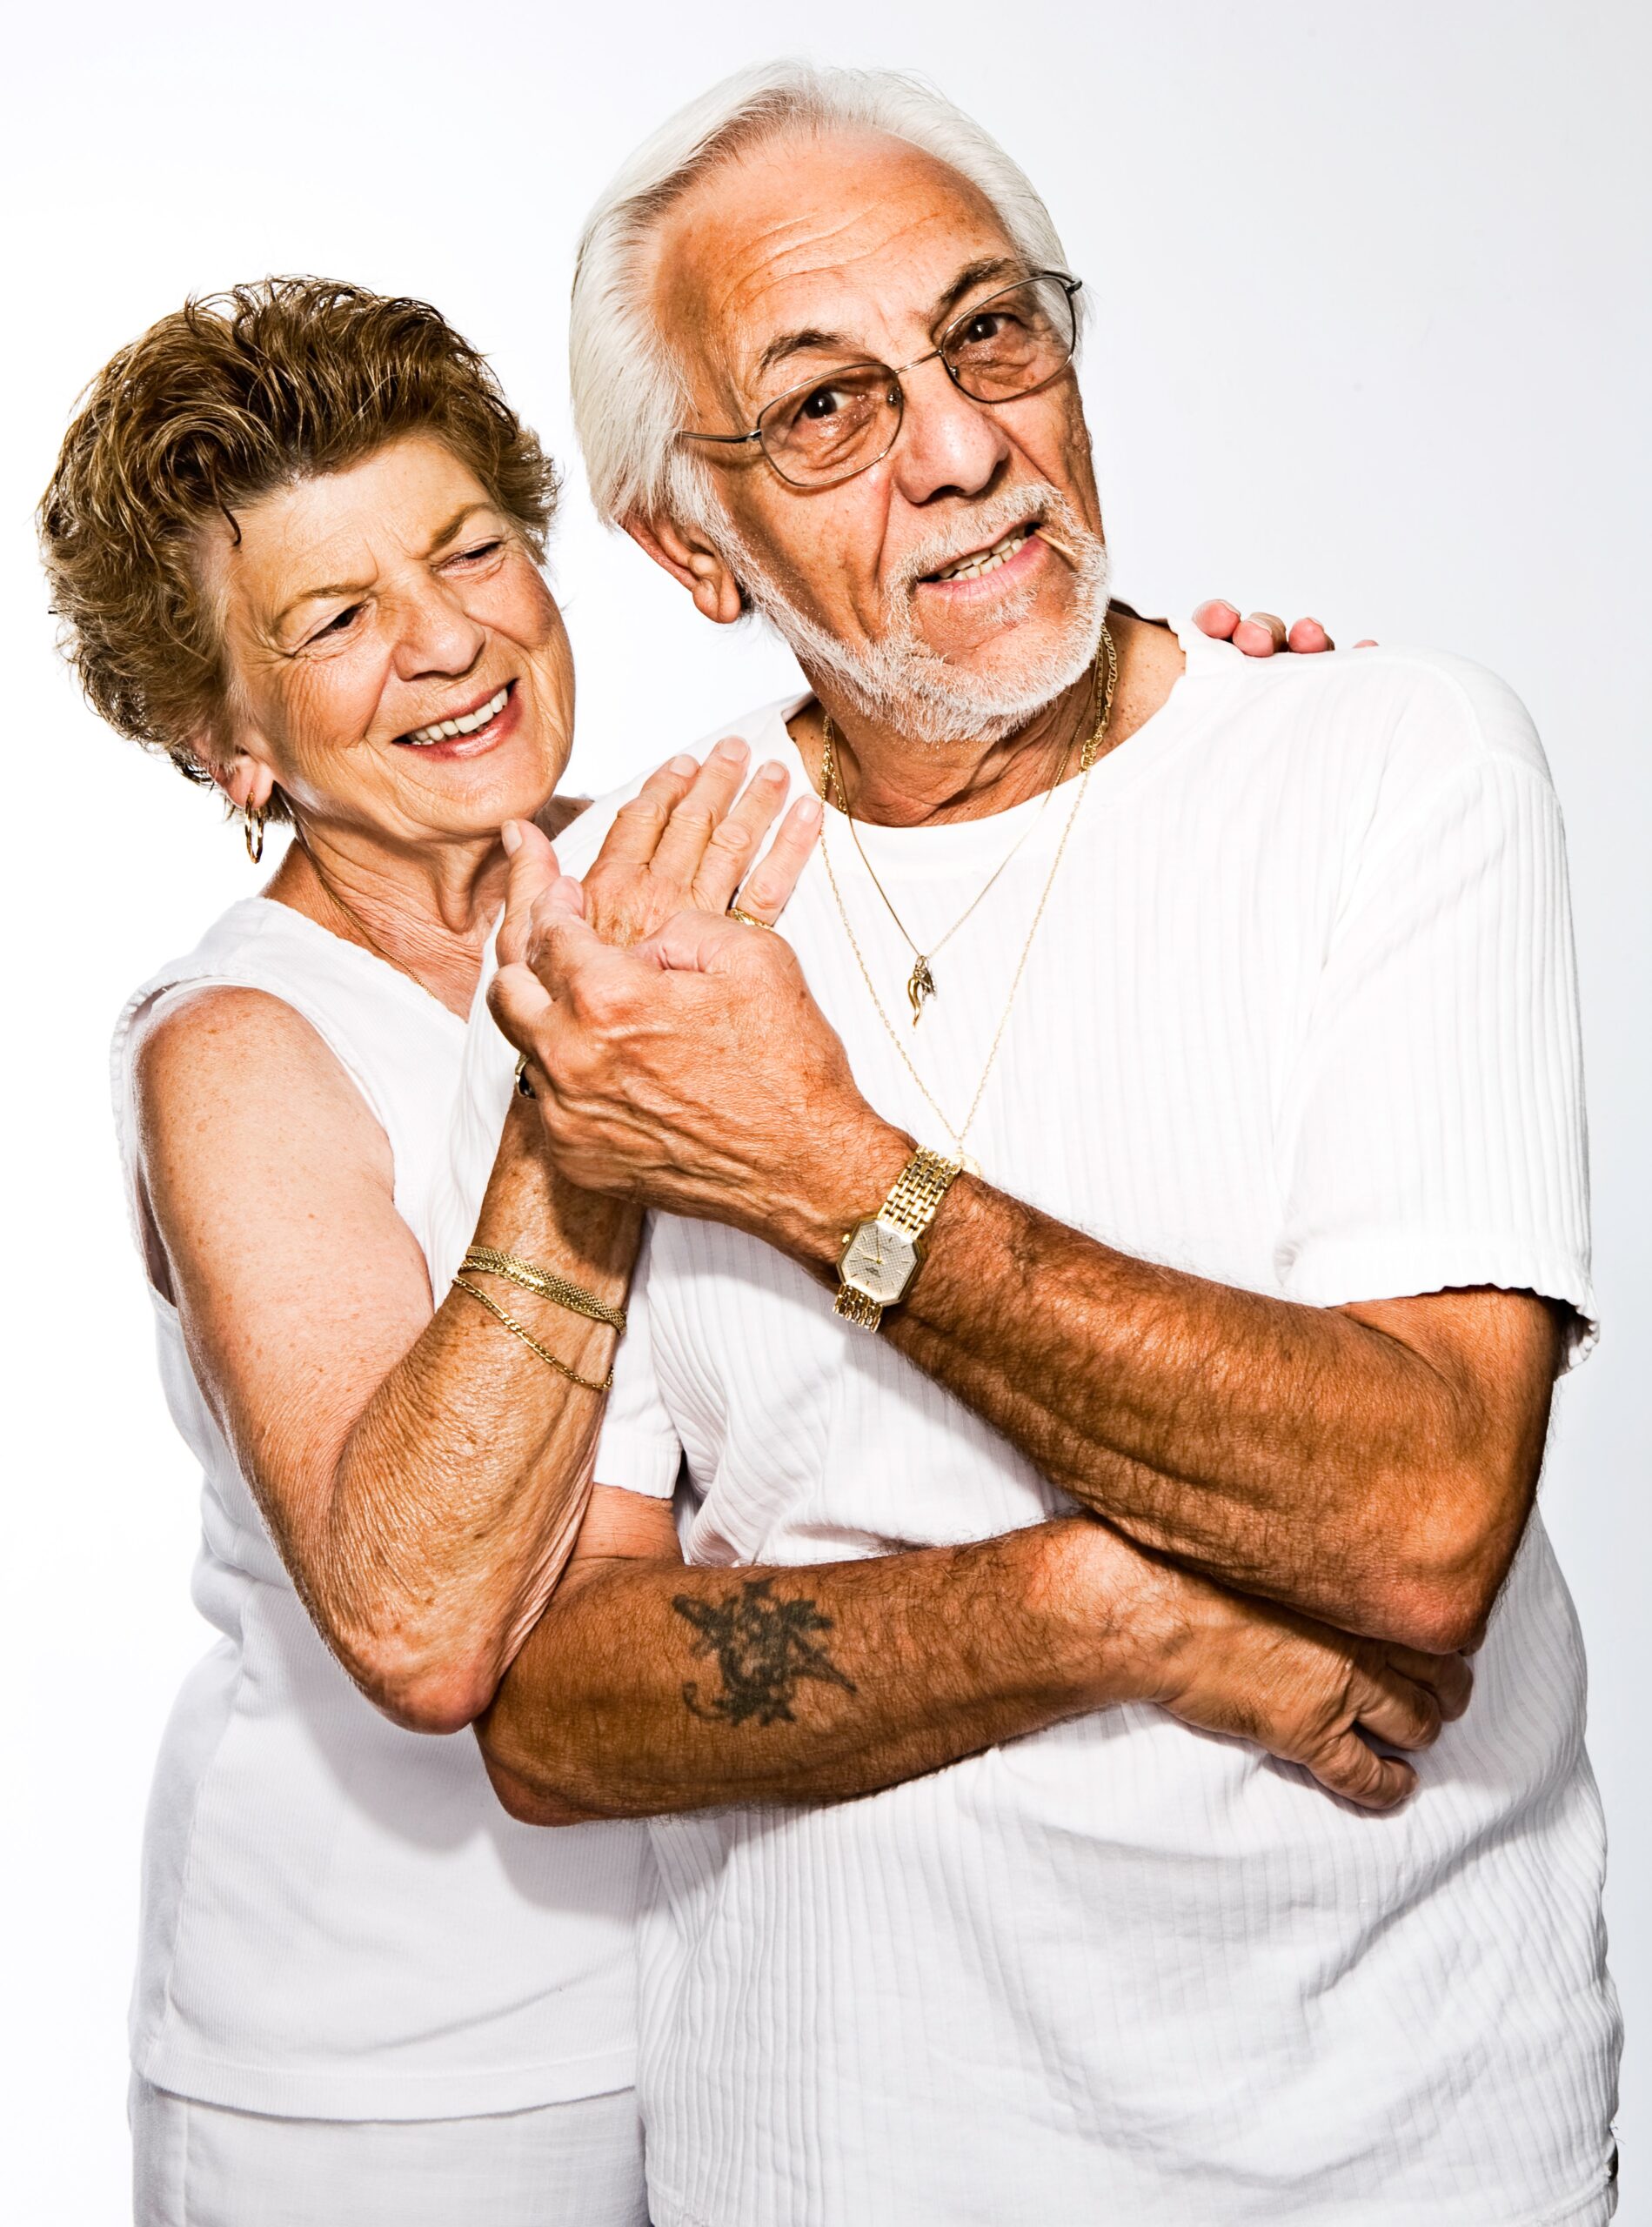 Senior Living Retirement Community